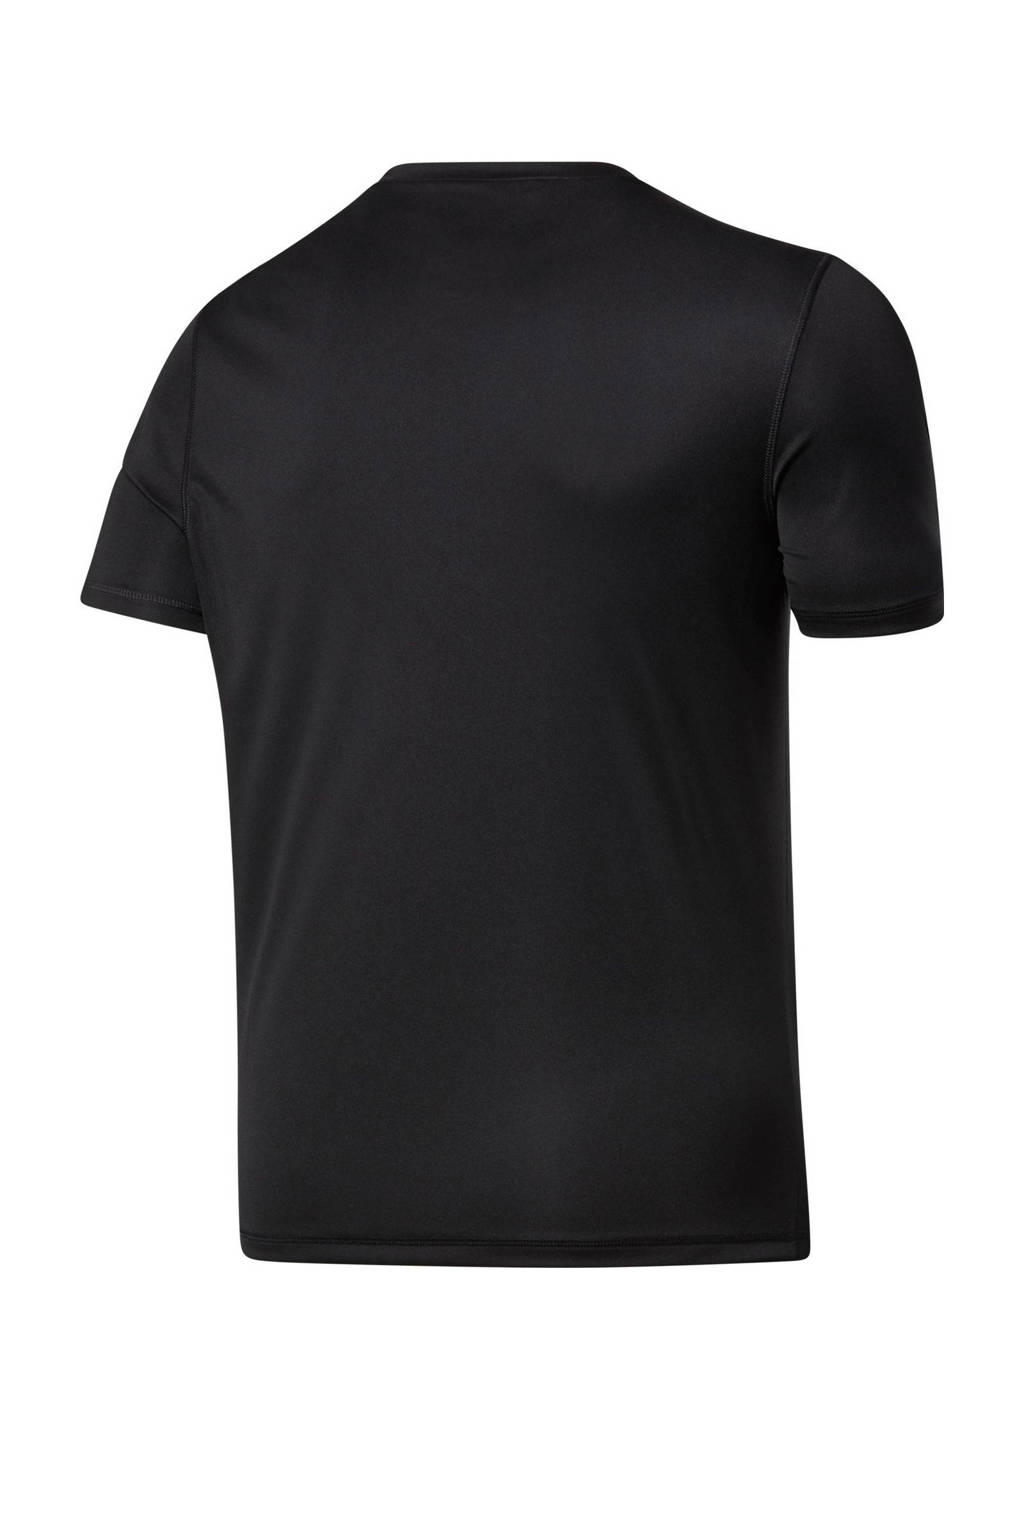 Reebok Training   sport T-shirt zwart